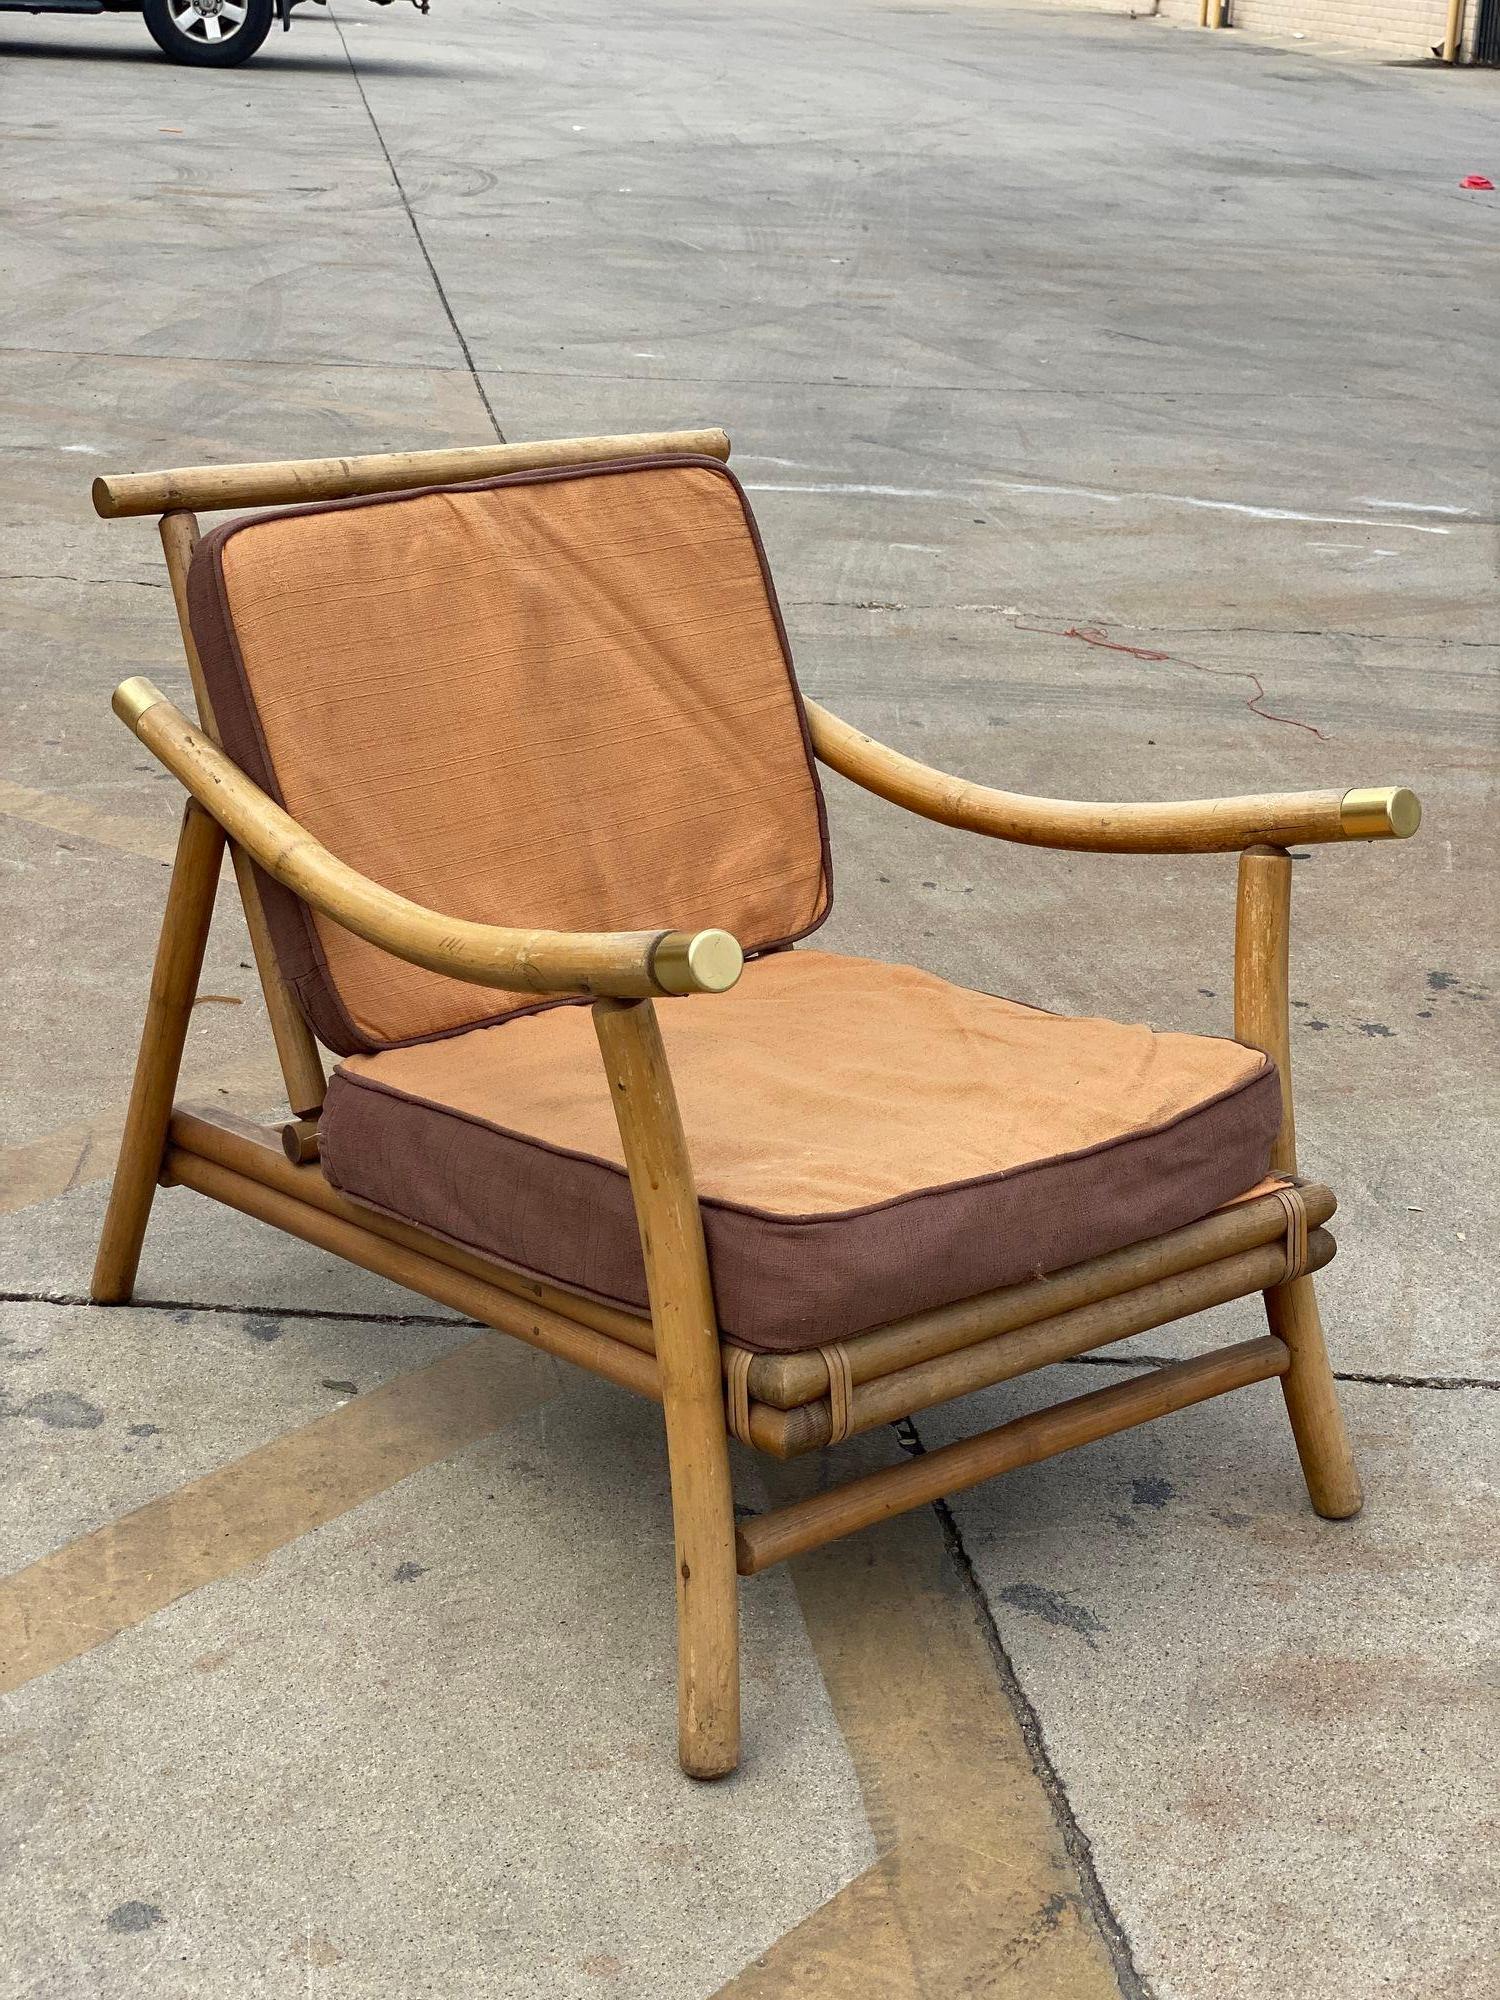 Restored Rattan Sofa & Chair Livingroom Set by John Wisner for Ficks Reed For Sale 1